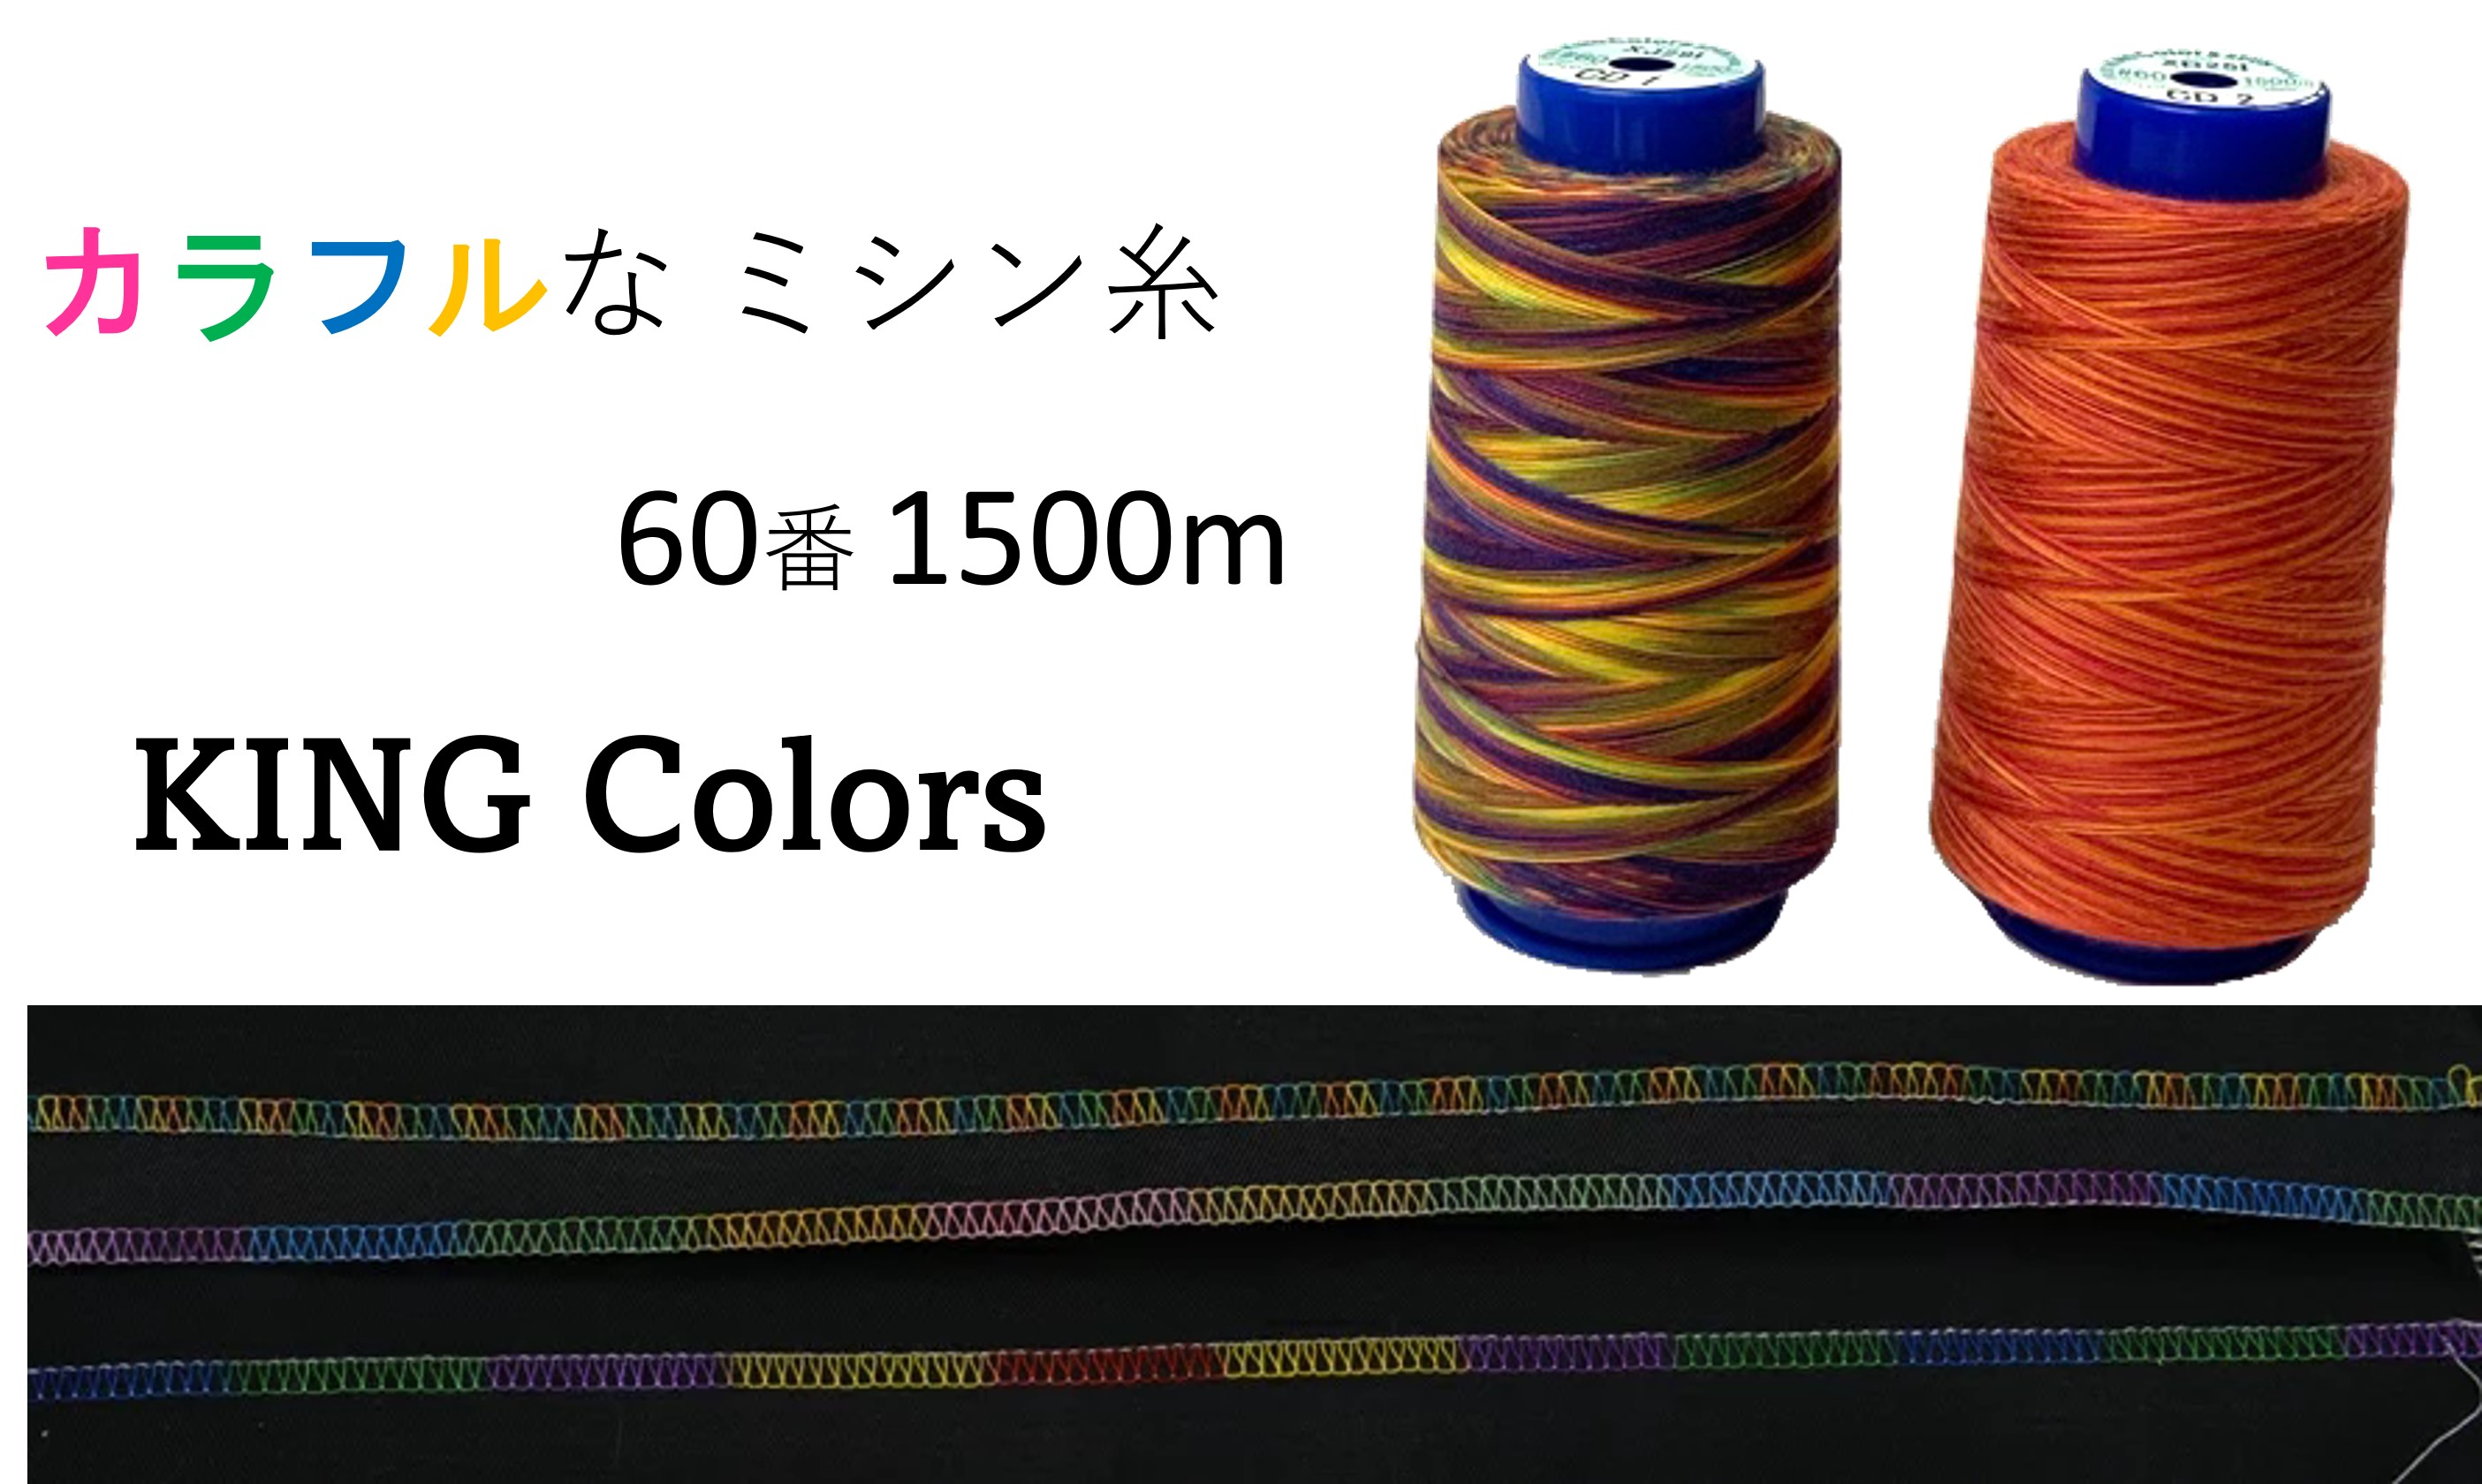 虹色のカラフルなスパンミシン糸 送料0円 1本で最大6色に変化します 色の変化の間隔が狭いタイプです 本縫いステッチ 飾りステッチ 飾りロック 刺繍などに幅広くお使いいただけます 虹色 大容量ミシン糸 カラーズスパン 60番 1500m ダンカラー レインボー カラフル 段染め グラデーション キングカラーズ 工業用 スパン 業務用 糸 ステッチ 60 刺繍糸 スパン60 入園 かわいい ミシン糸 手芸 ハンドメイド ロックミシン 子供 小物 普通地用 デポー 万能色 入学